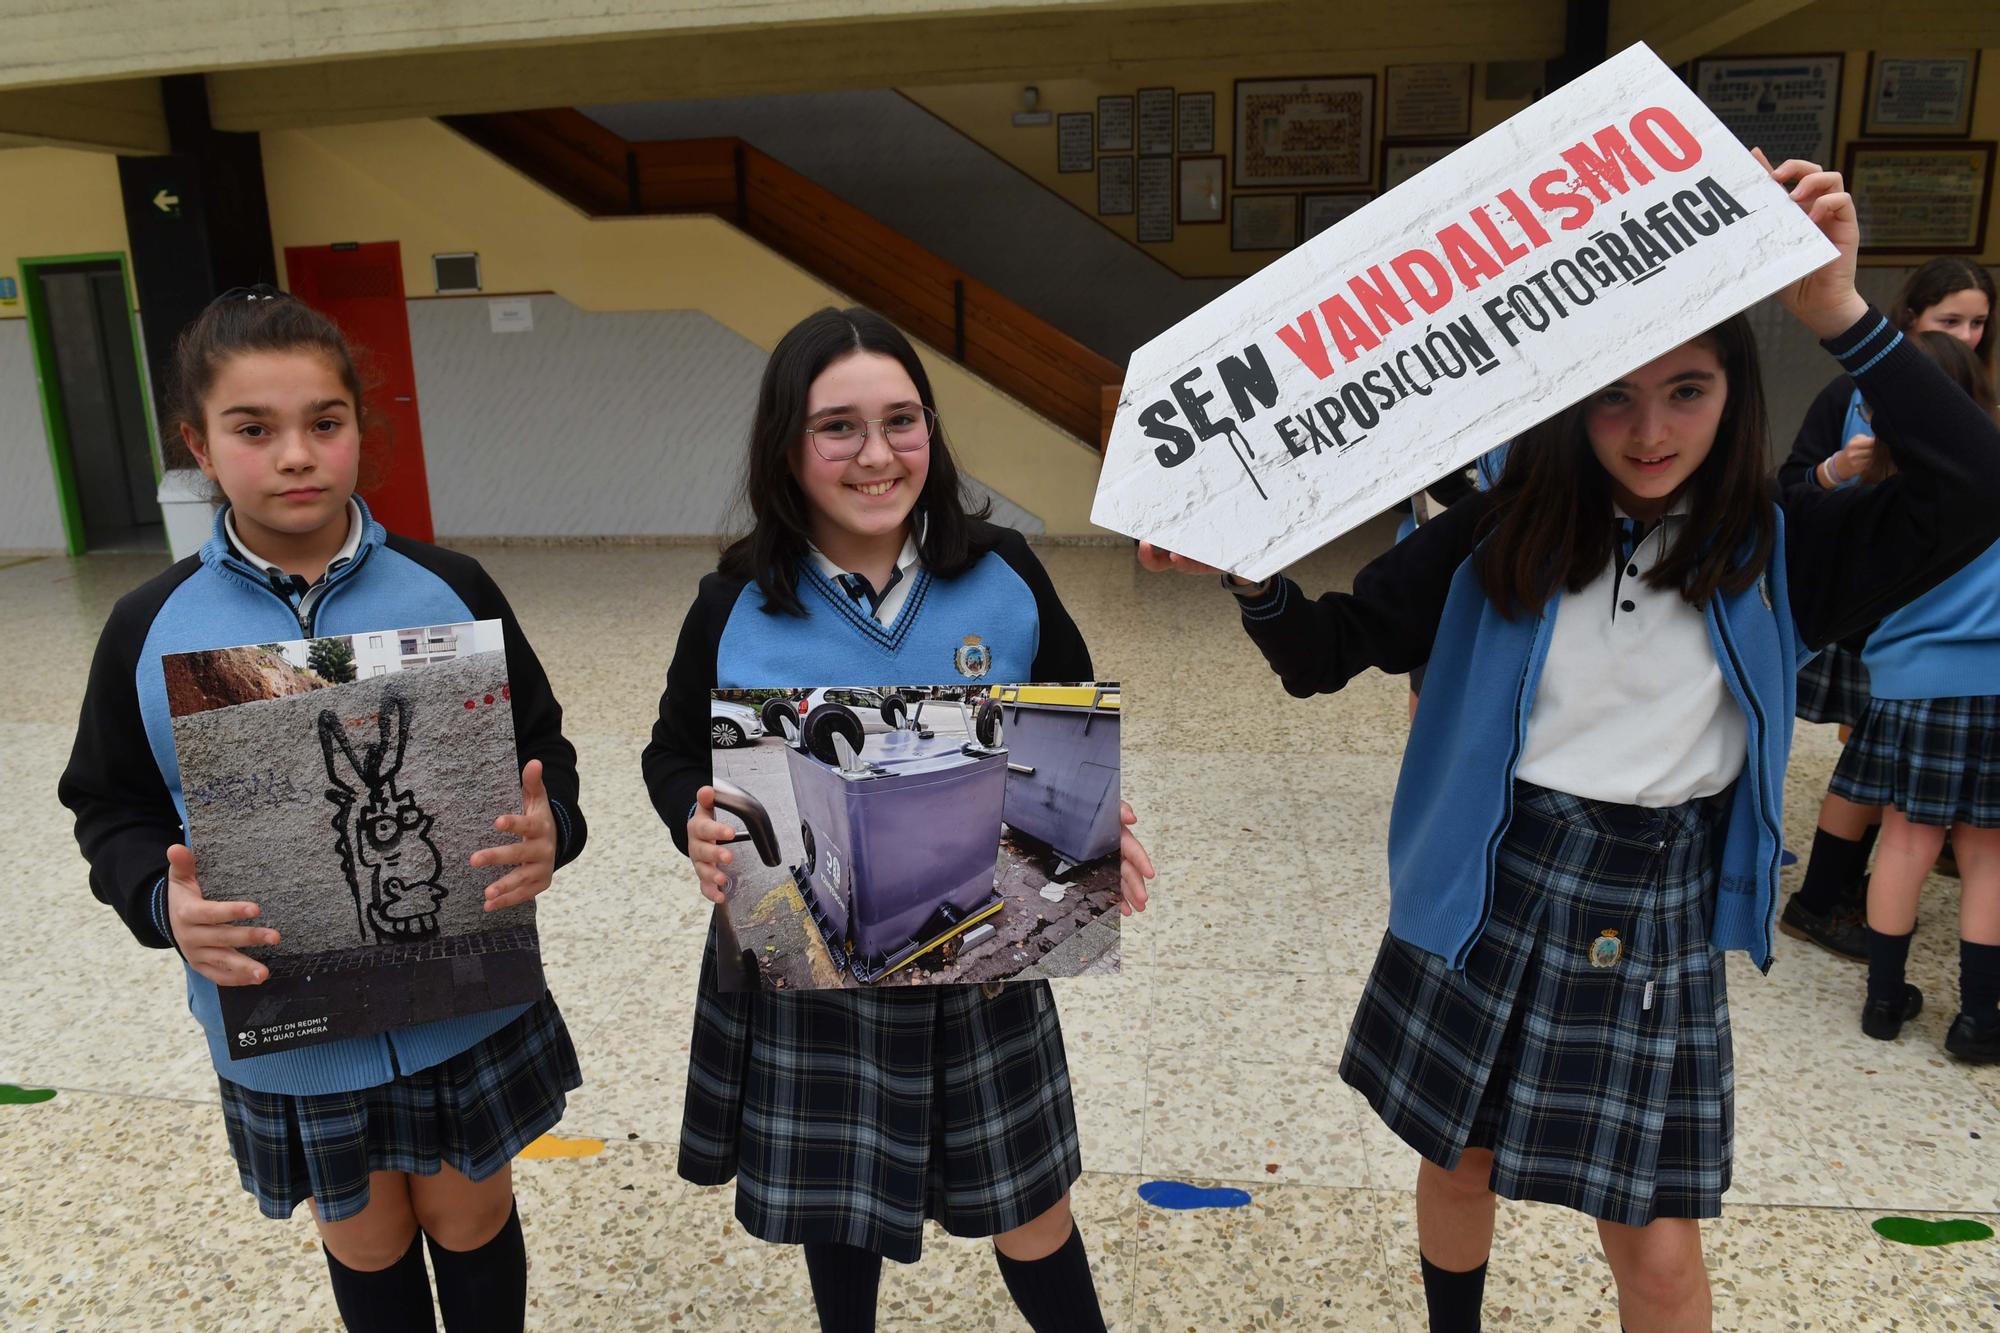 Alumnos del Calasancias presentan una exposición de fotos sobre vandalismo